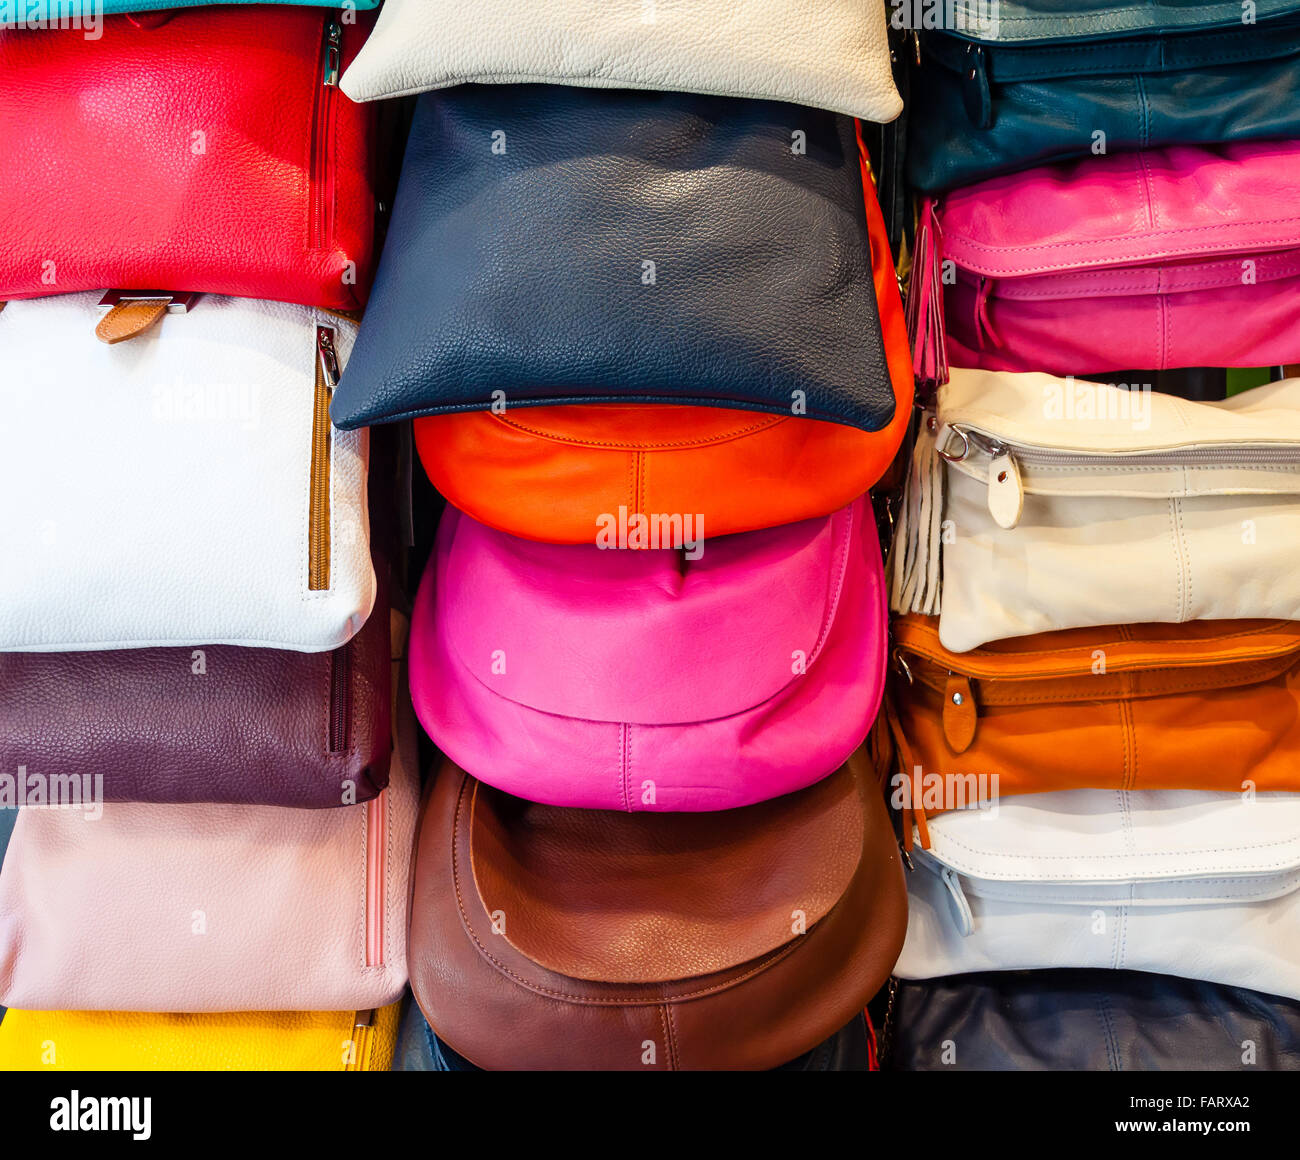 colorful handbags on display Stock Photo